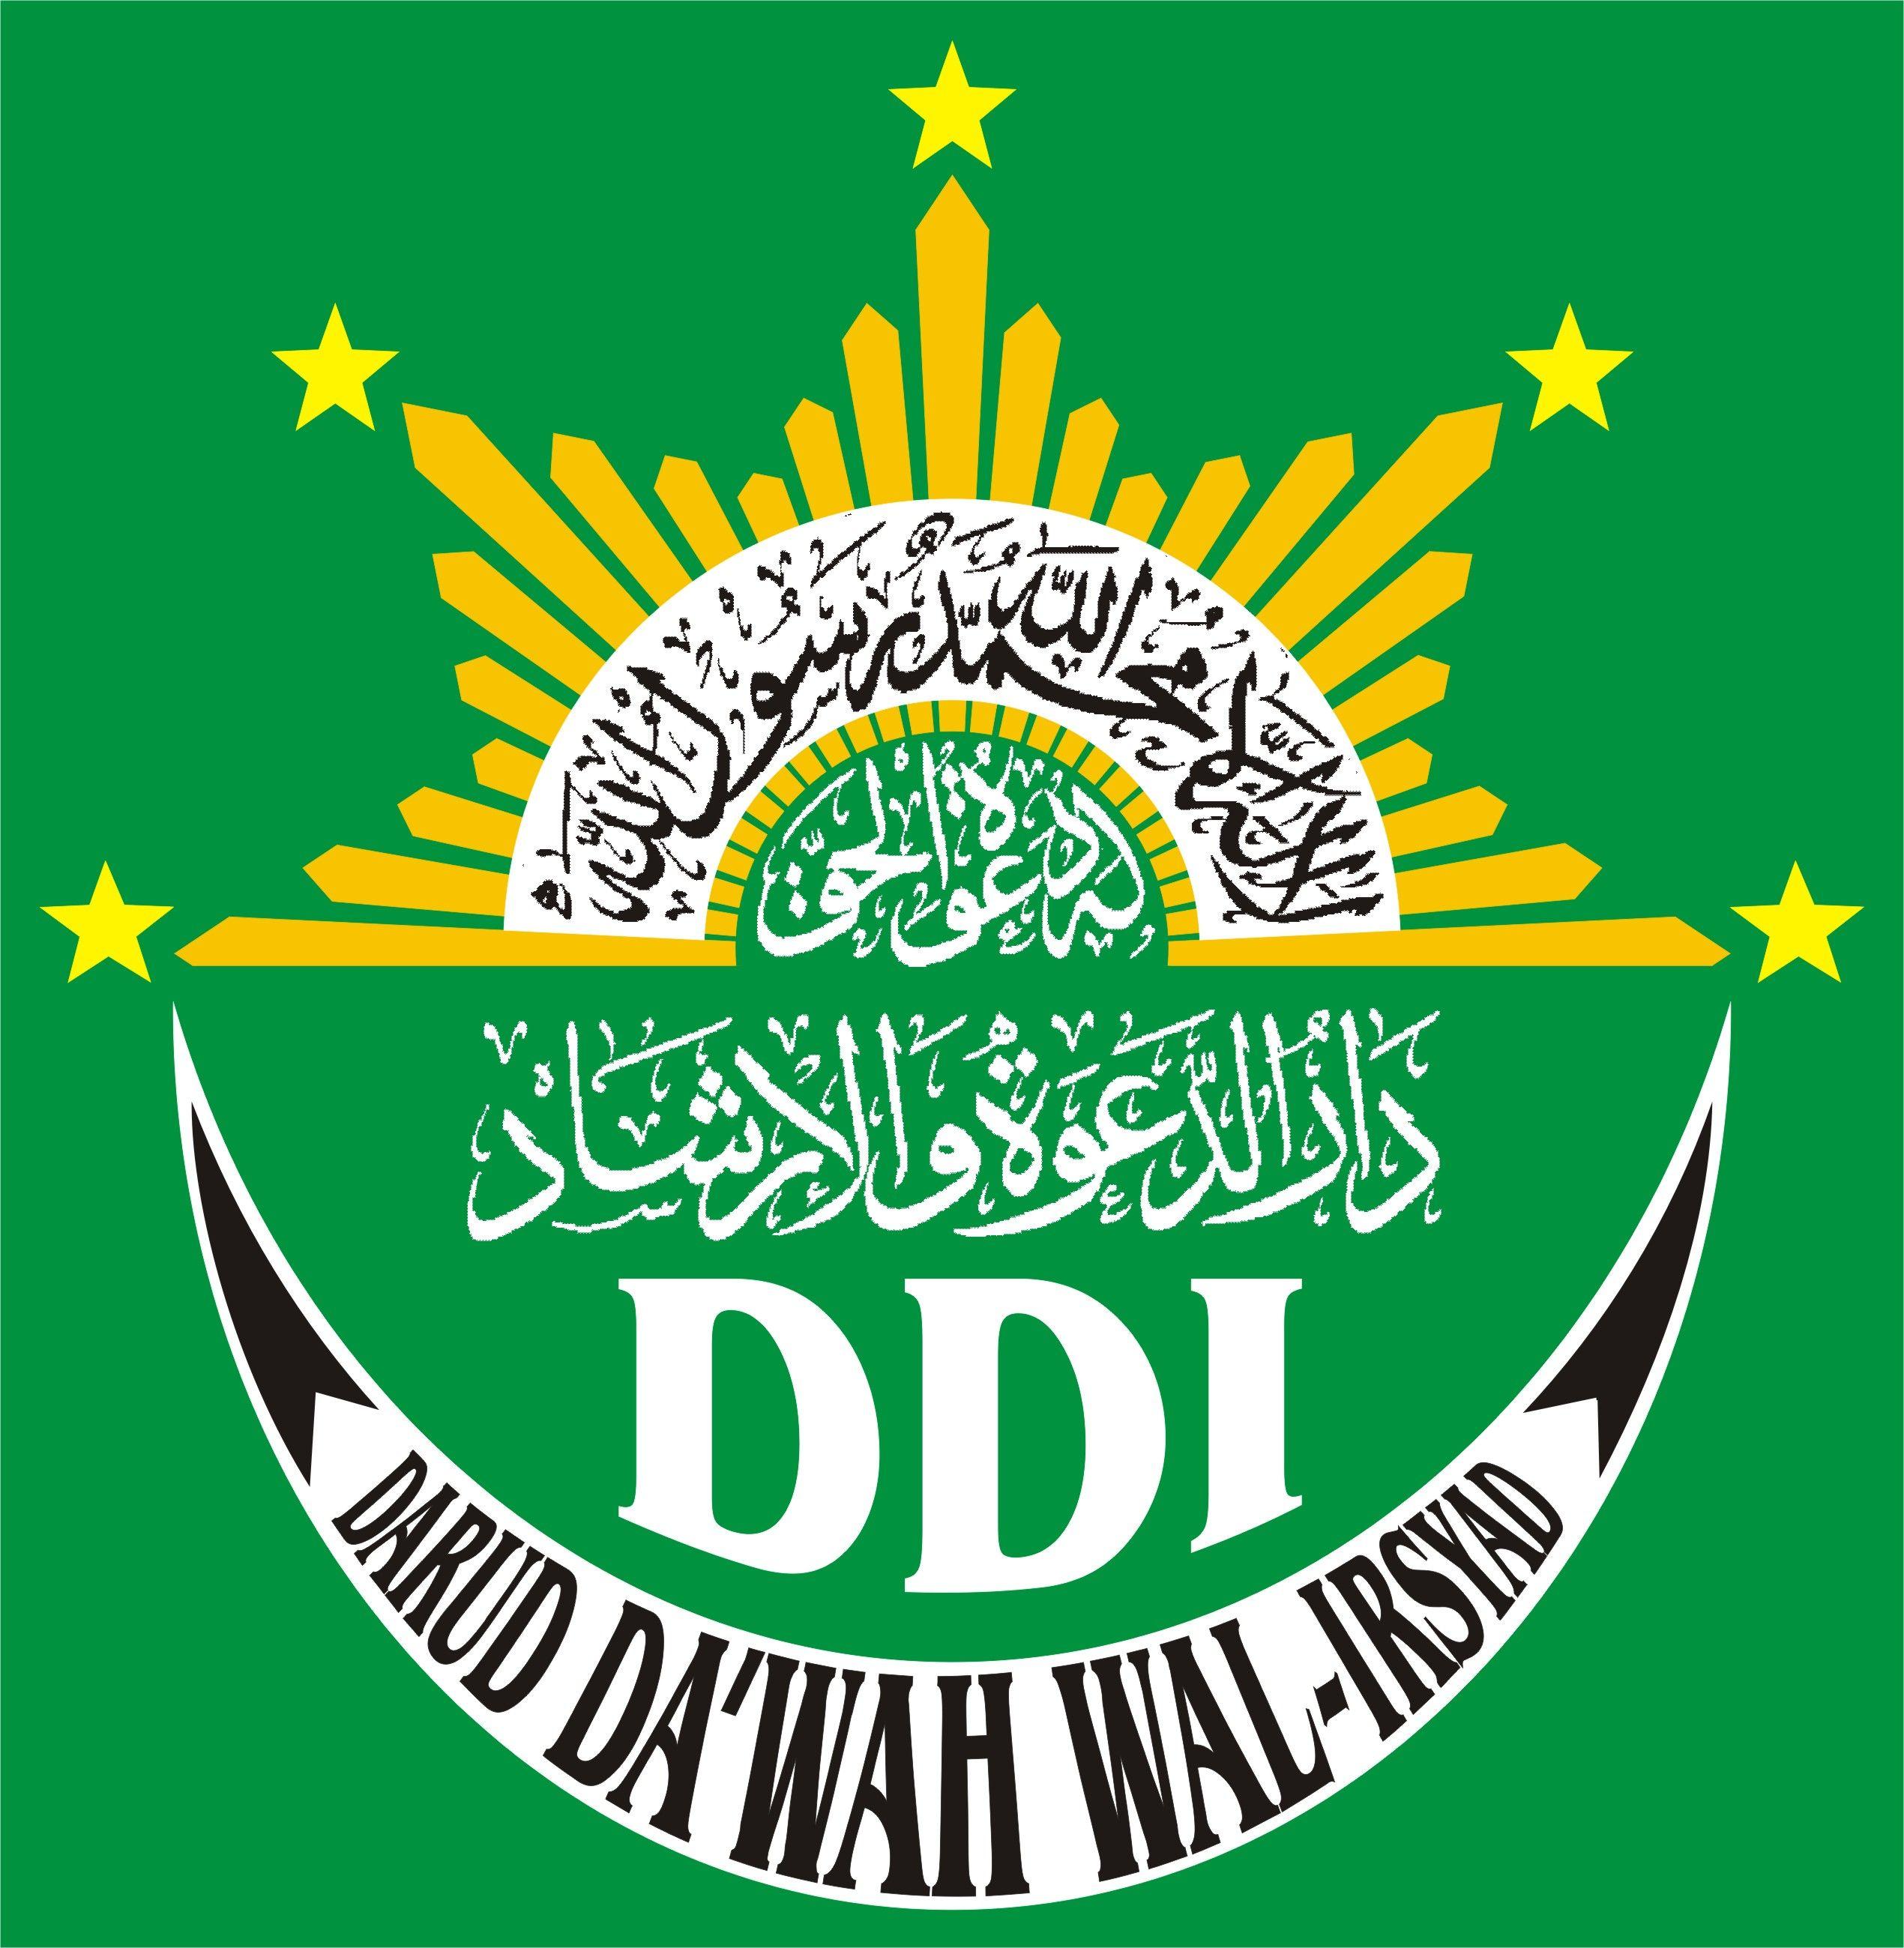 DDI Logo - logo DDI